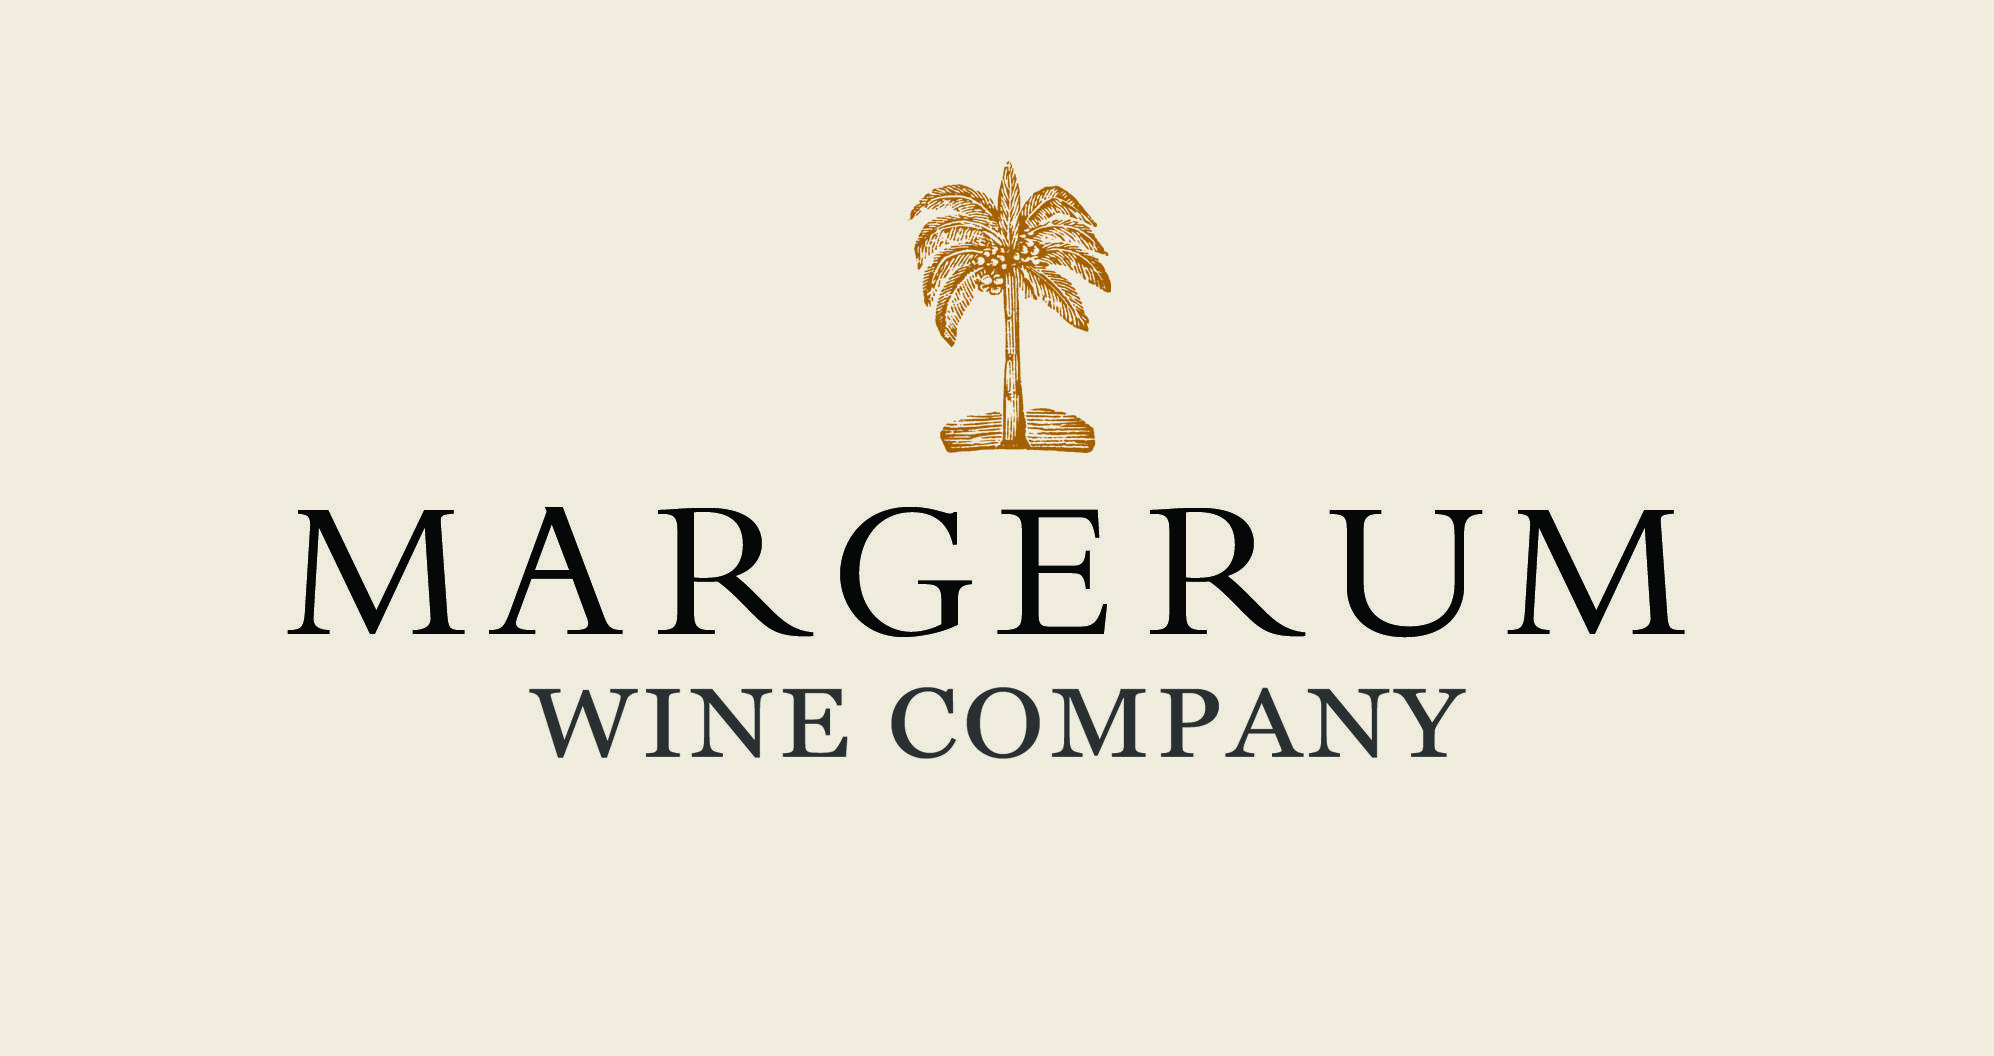 Wine Company Logo - Margerum Wine Company - Trade - Logos